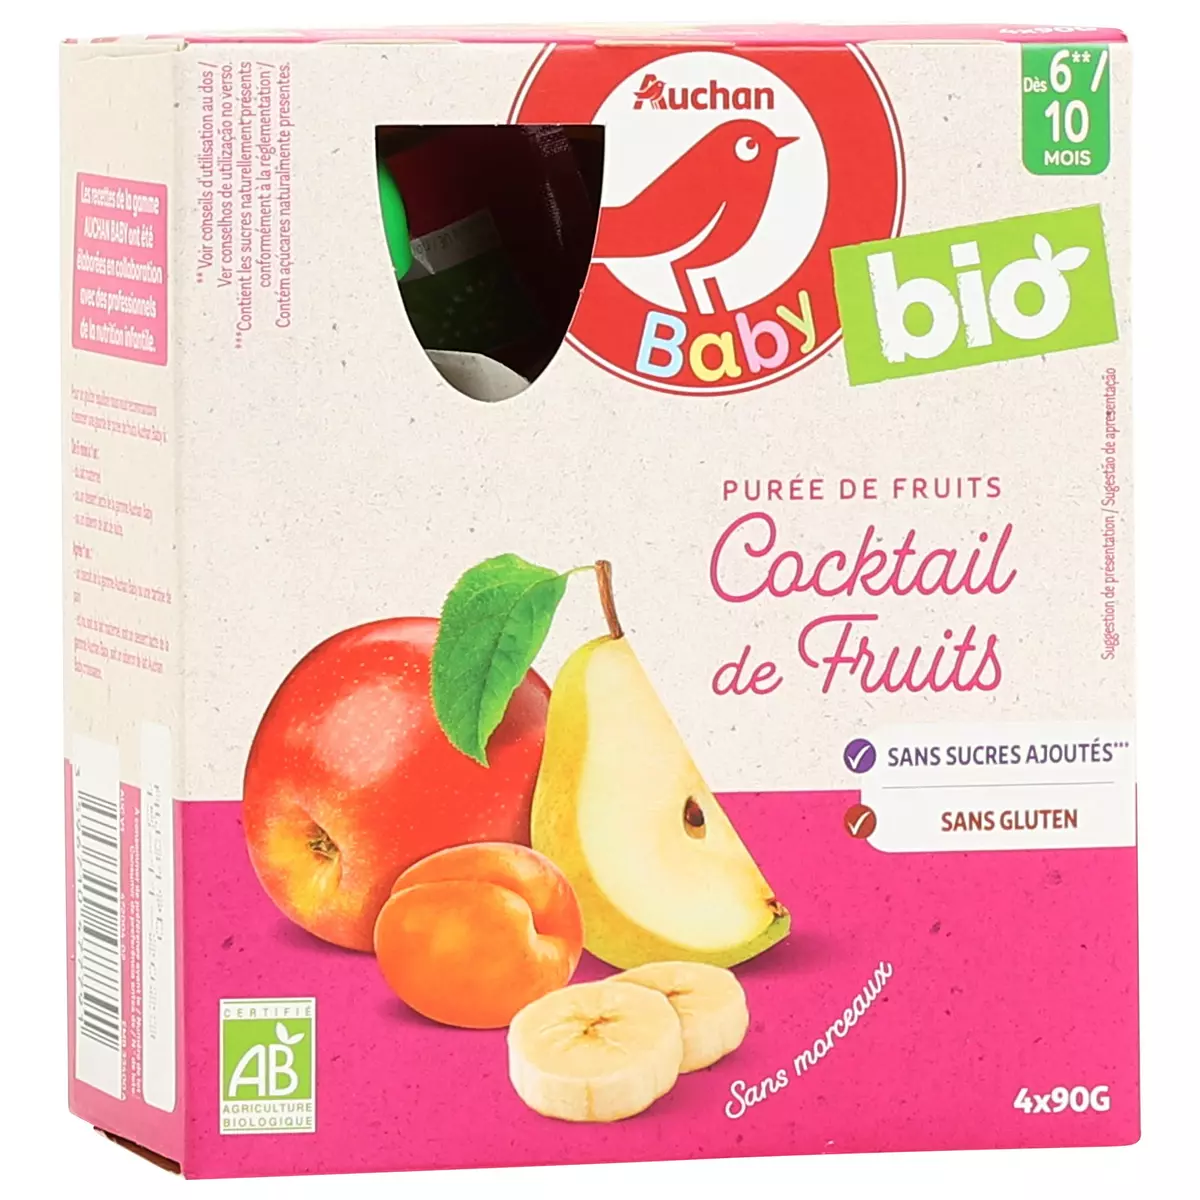 Compotes bébé dès 6 mois, cocktail de fruits BLEDINA